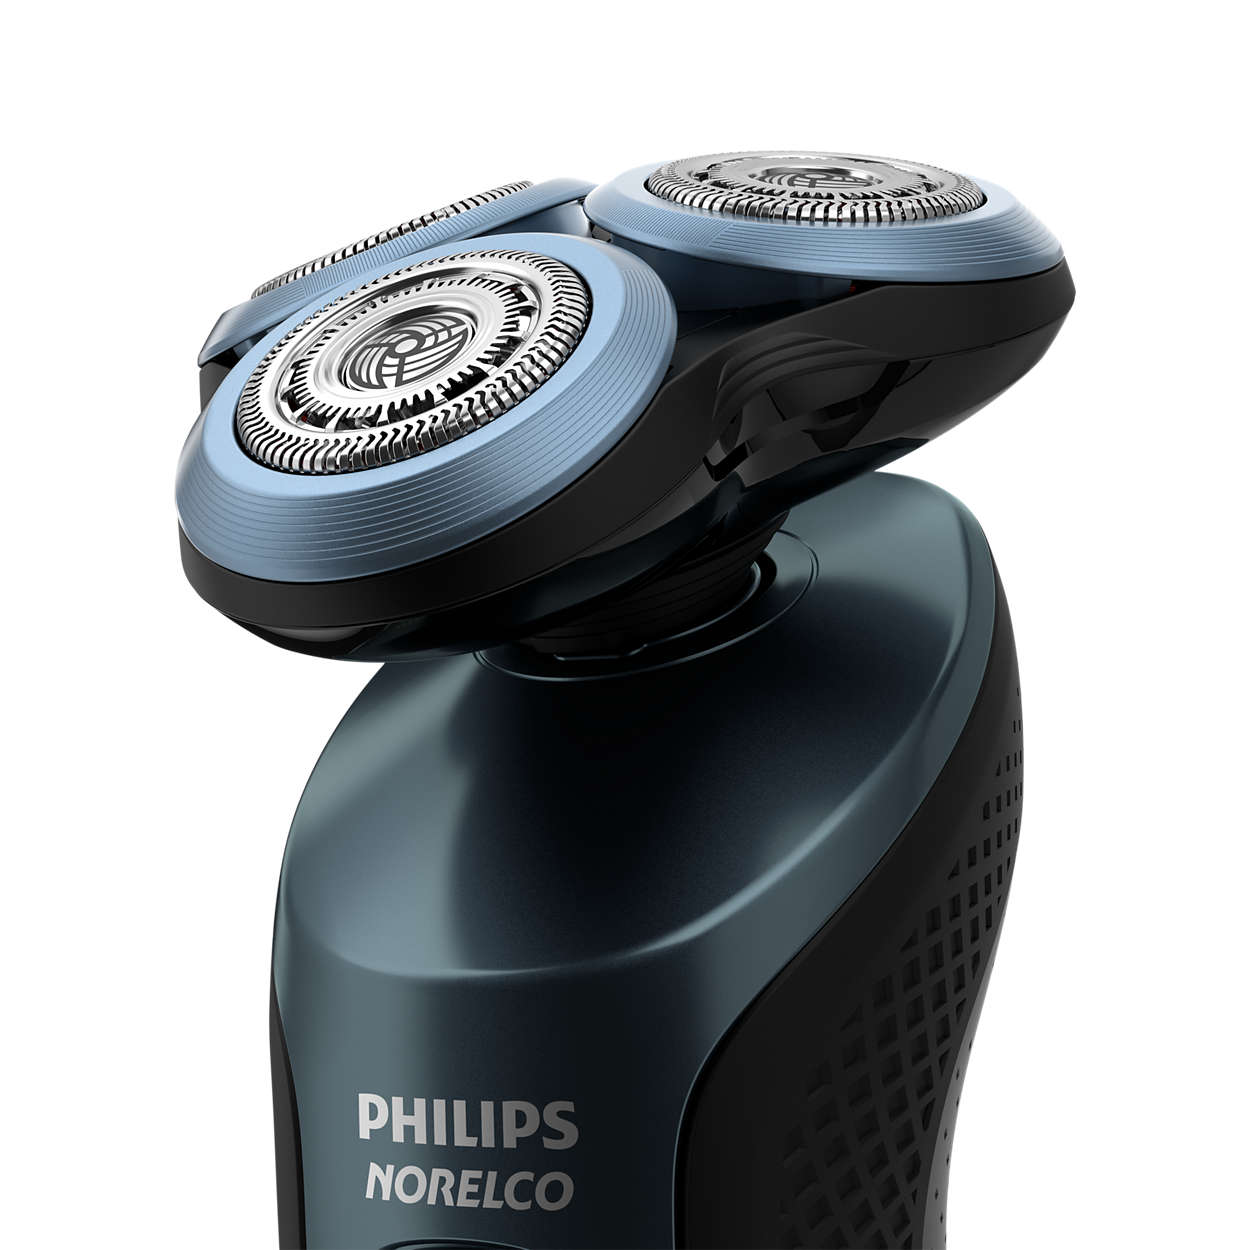 Филипс 6000. Бритва Филипс шейвер. Philips s6000. Philips 6000 Series. Бритва Филипс 6000 Series.